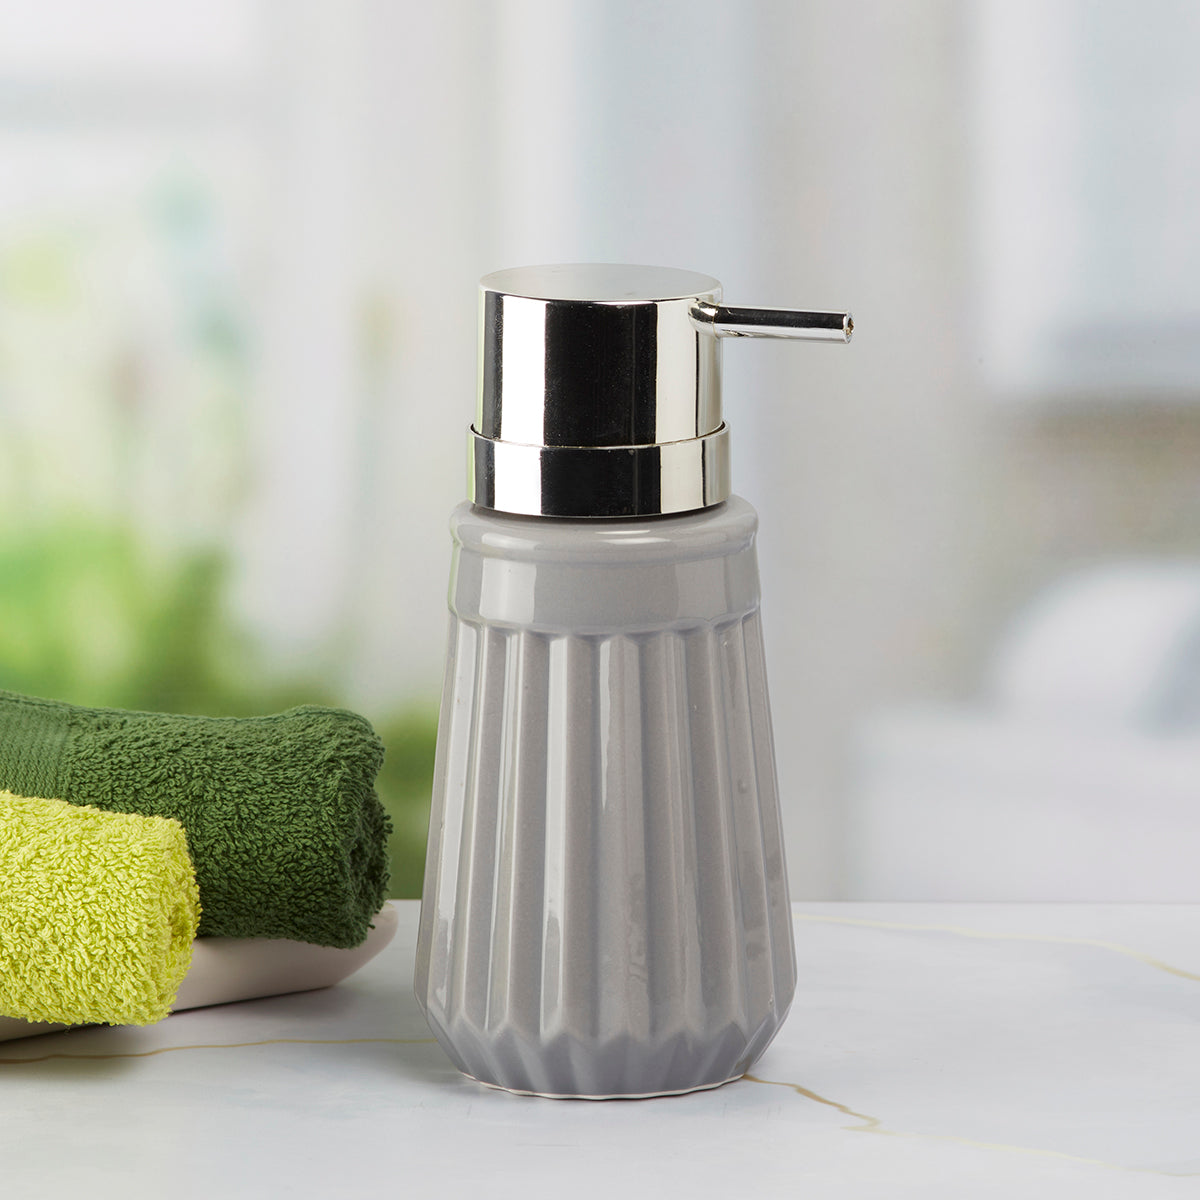 Kookee Ceramic Soap Dispenser for Bathroom handwash, refillable pump bottle for Kitchen hand wash basin, Set of 1, Grey (6034)